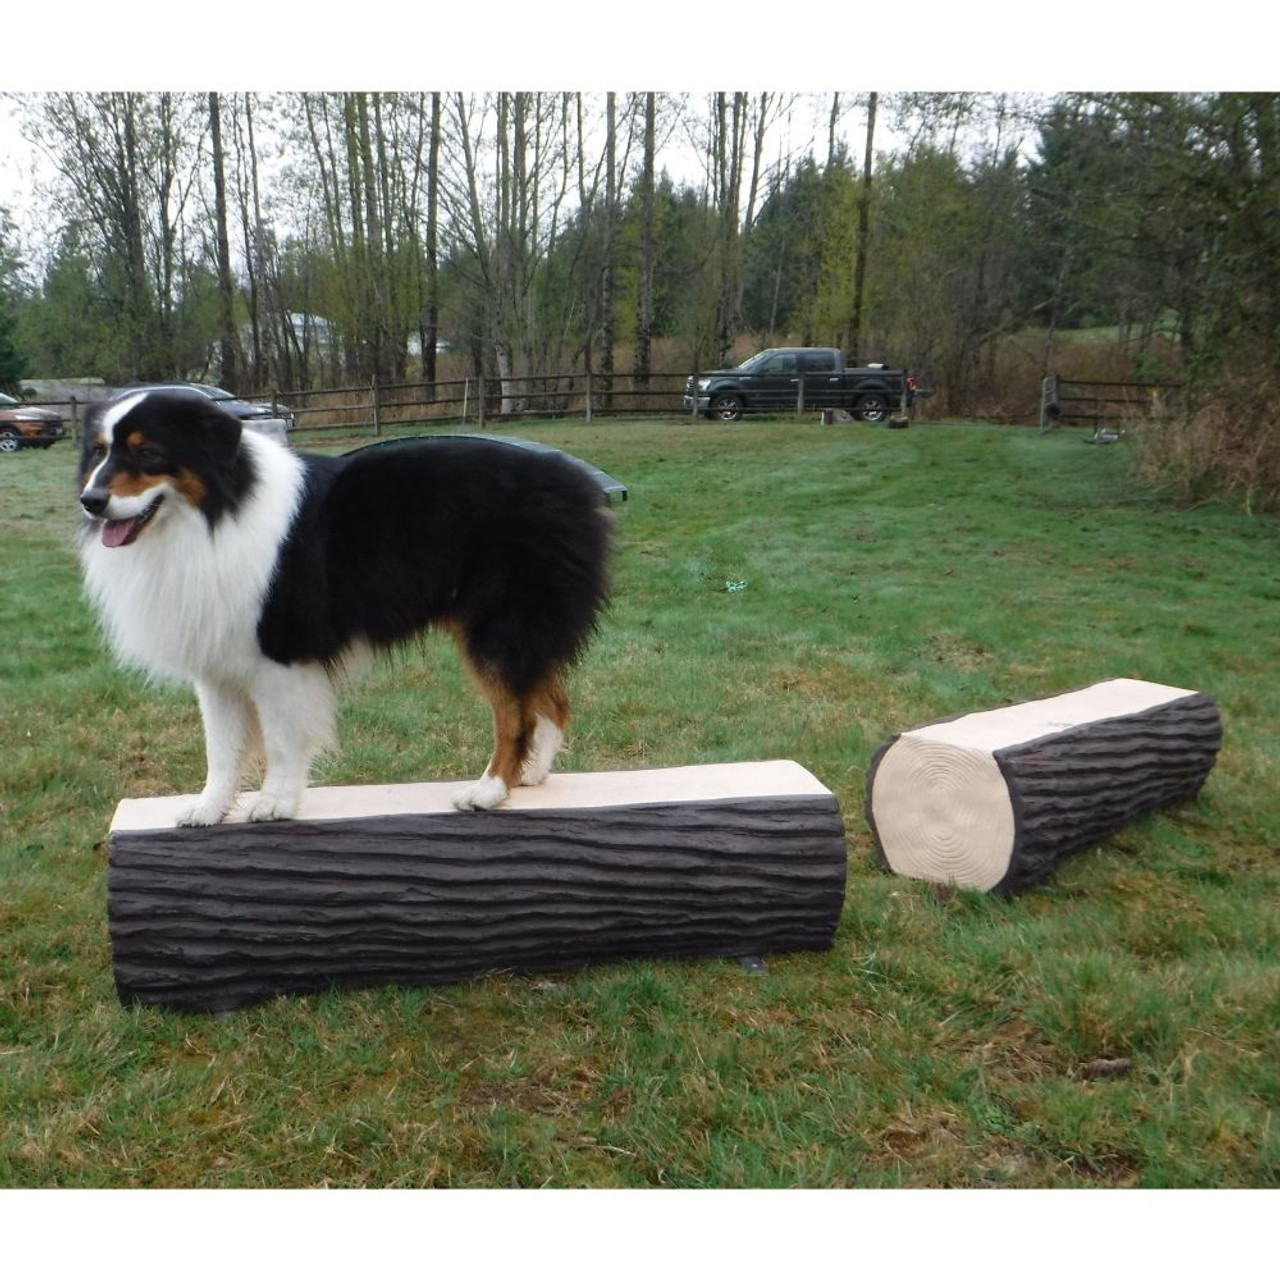 Nature Dog - Dog Park - Dog Leg Walk Log Set of 2